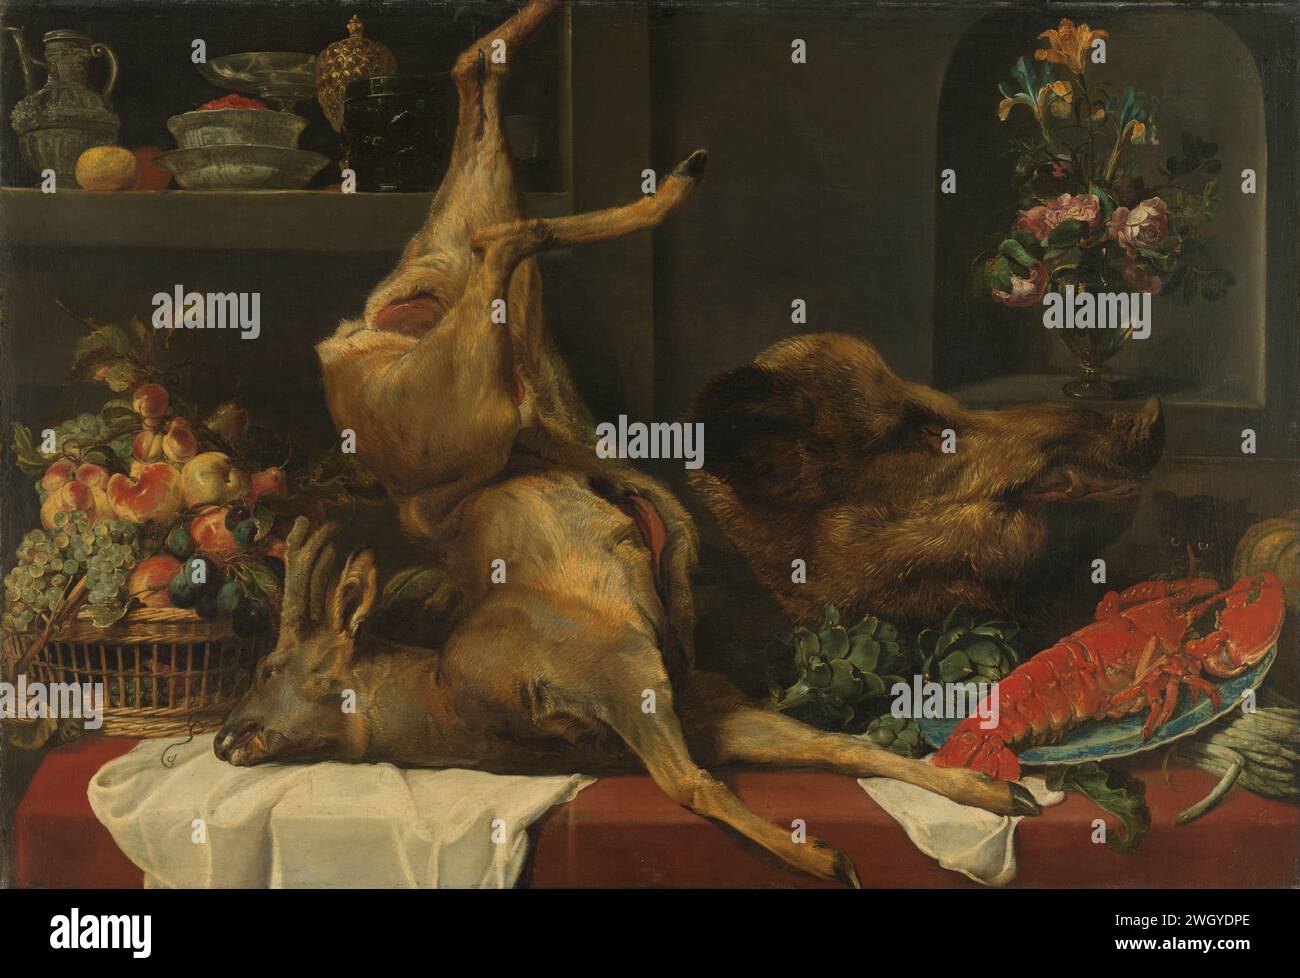 Larder Still Life, Frans Snijders, c. 1616 - c. 1625 peinture de nature morte avec grand gibier mort, fruits et fleurs. Sur une table devant un mur se trouvent un panier avec des raisins, des pêches et des prunes, un cerf ouvert accroché à une jambe, la tête d'un sanglier, des artichauts, un bol avec un homard et un bouquet d'asperges. Un chaton regarde le homard. Dans le fond à gauche dans le mur une niche avec travail vasculaire, à droite une niche avec un bouquet de fleurs dans un vase en verre. peinture à l'huile (peinture). toile peignant des légumes et des fruits ; nature morte des légumes et des fruits. butin de la chasse, du gibier, de la venaison. sti Banque D'Images